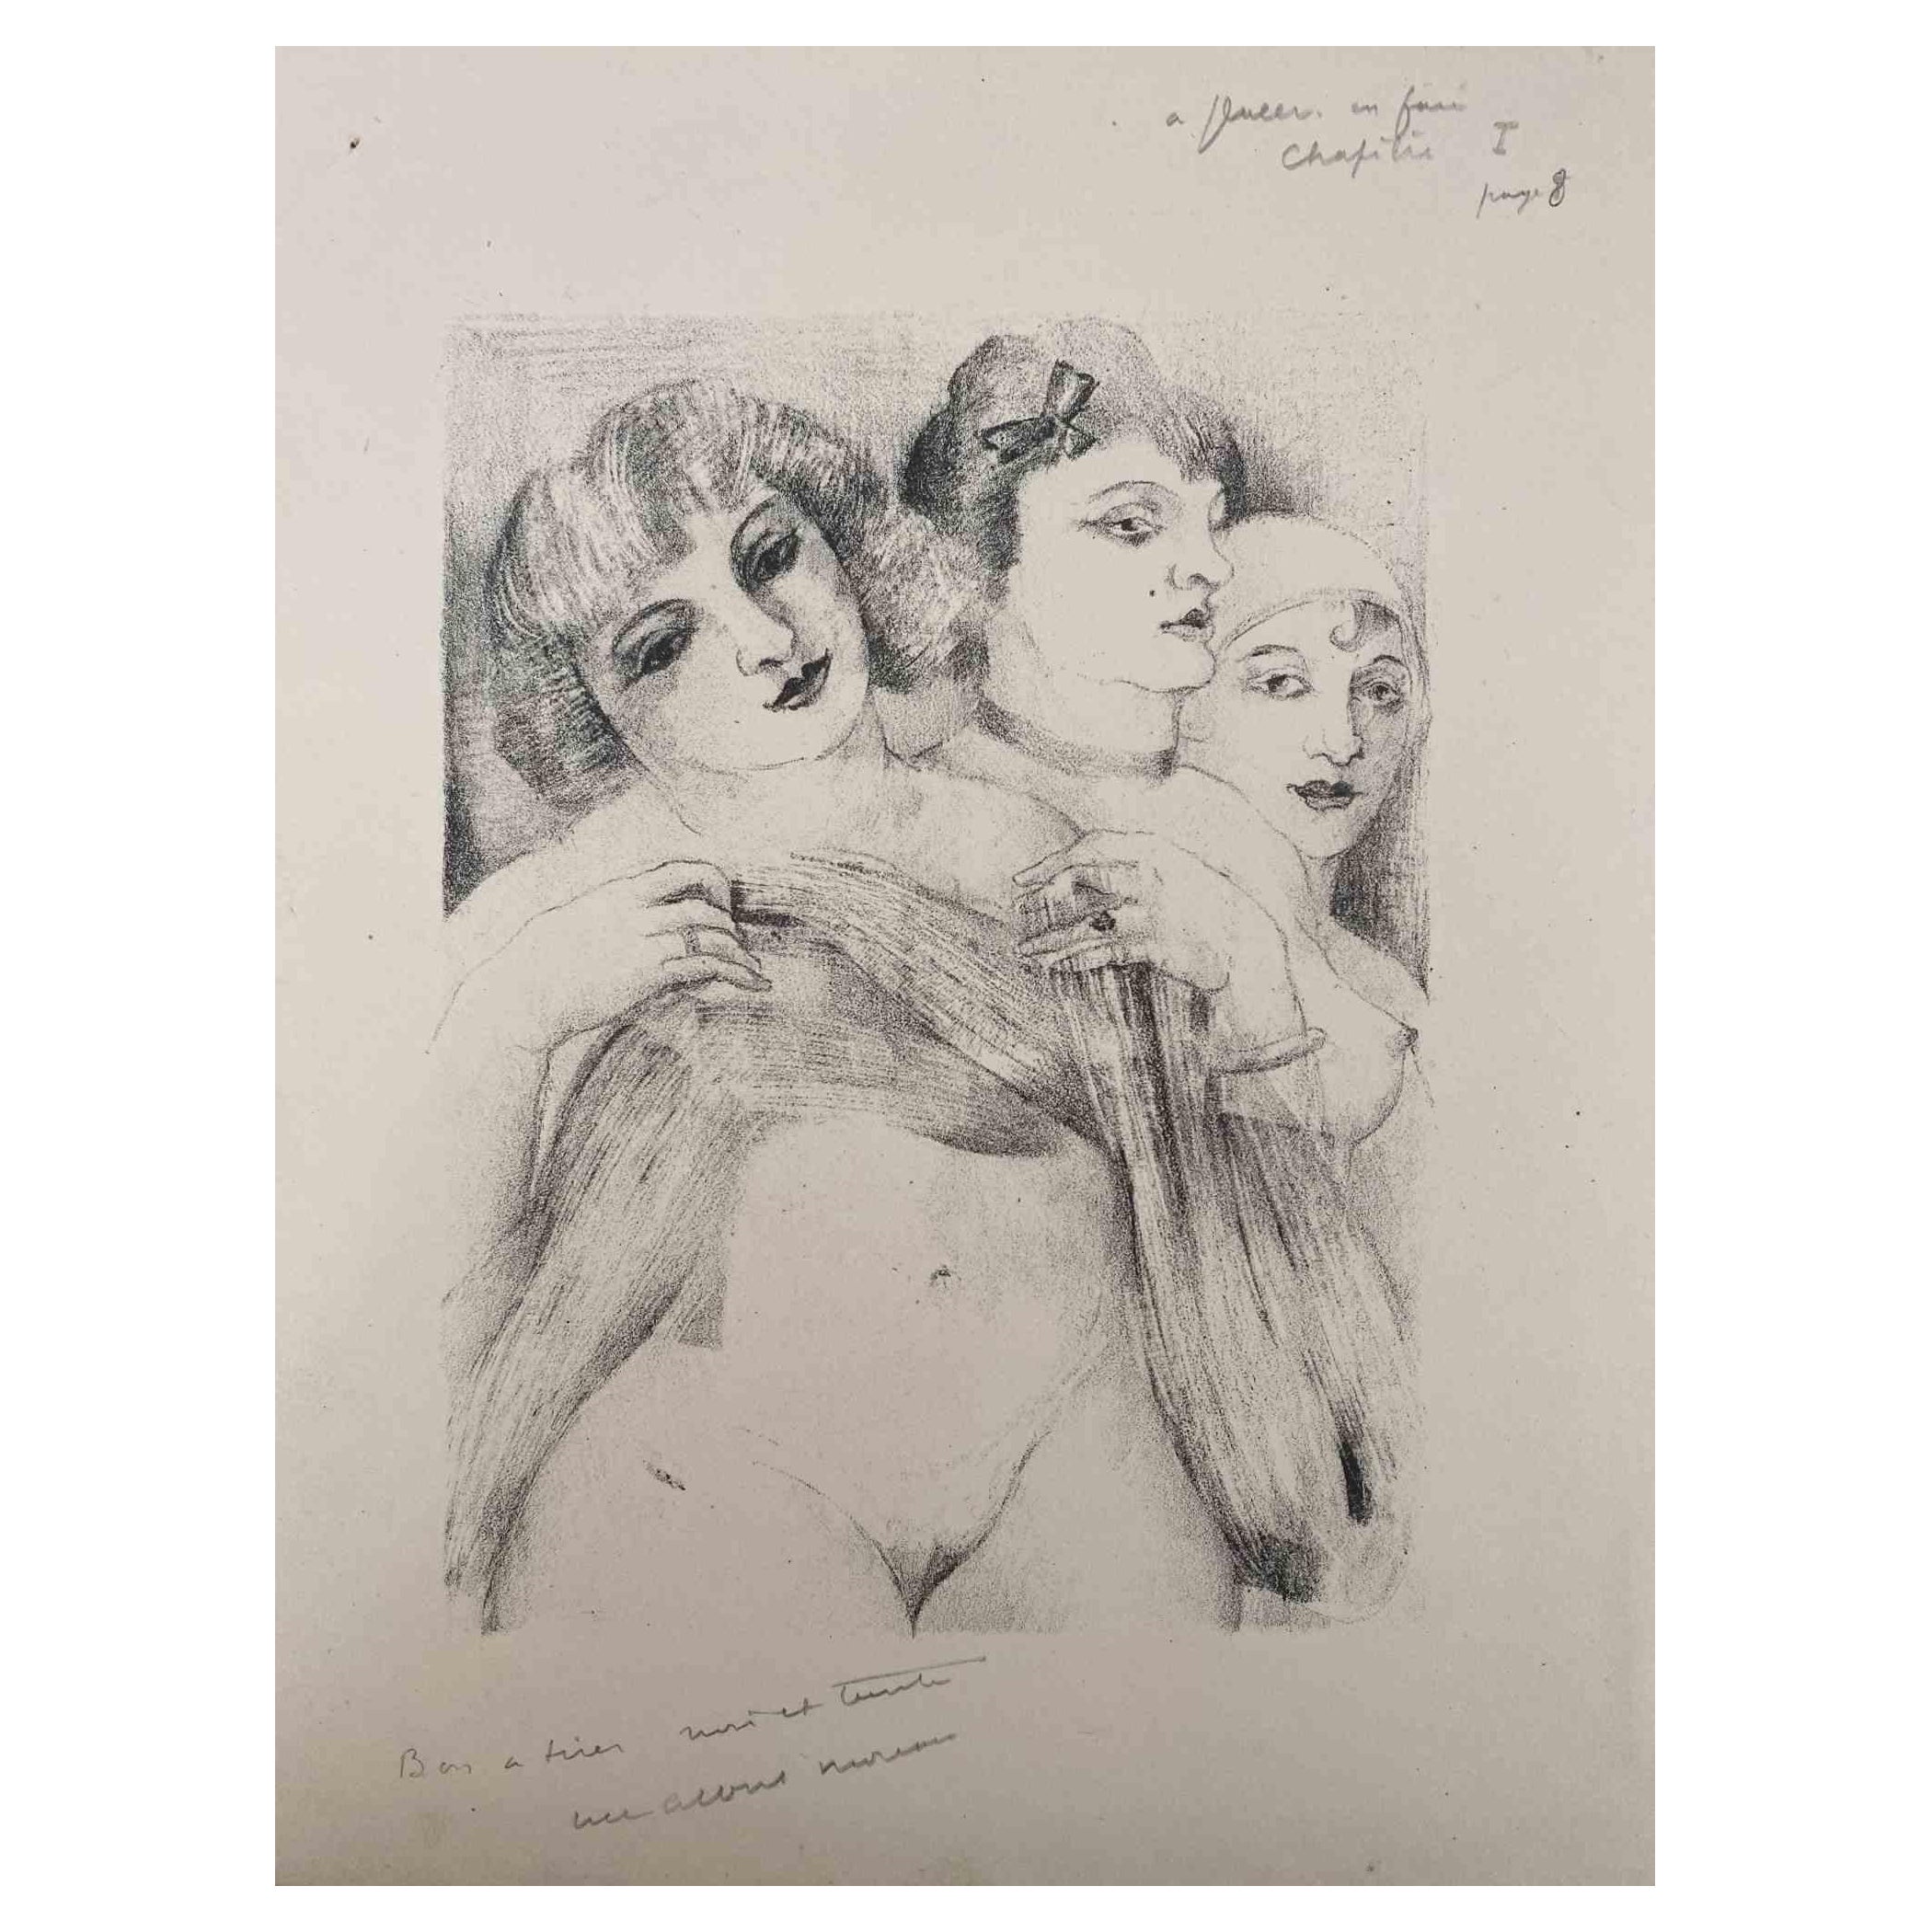 Three Nude Women ist eine Original-Lithographie auf elfenbeinfarbenem Papier von Luc Albert Moreau.

Das Kunstwerk ist in gutem Zustand mit leichten Stockflecken.

Handsigniert auf der Unterseite. 

Luc-Albert Moreau (1882-1948) ist ein